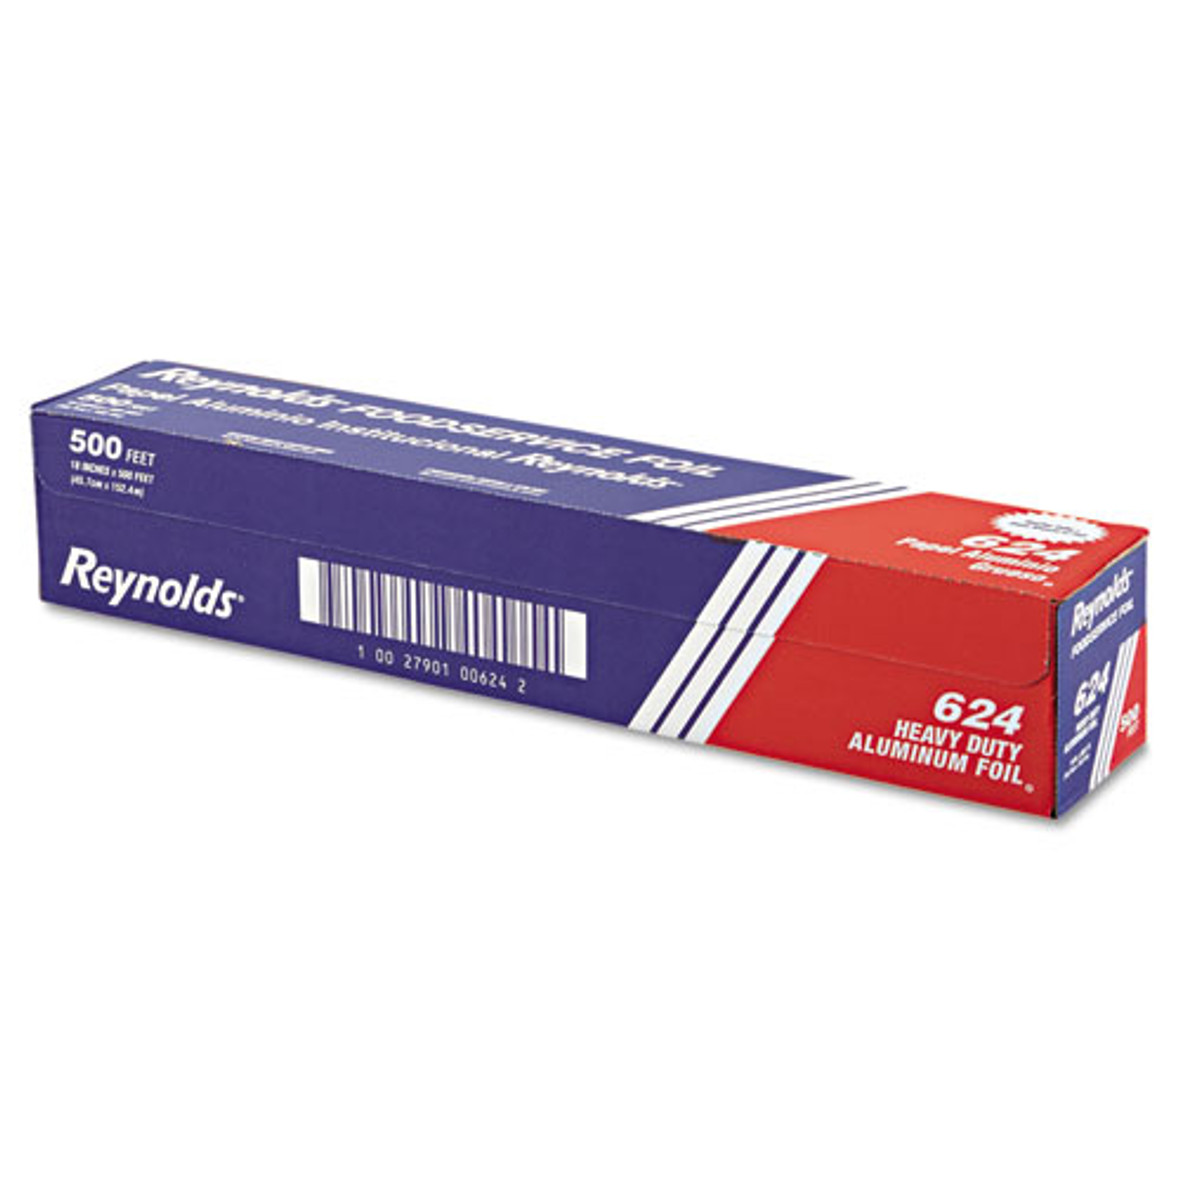 Reynolds Wrap® Heavy Duty Aluminum Foil Roll, 18" X 500 ft, Silver, 1 Roll/Carton